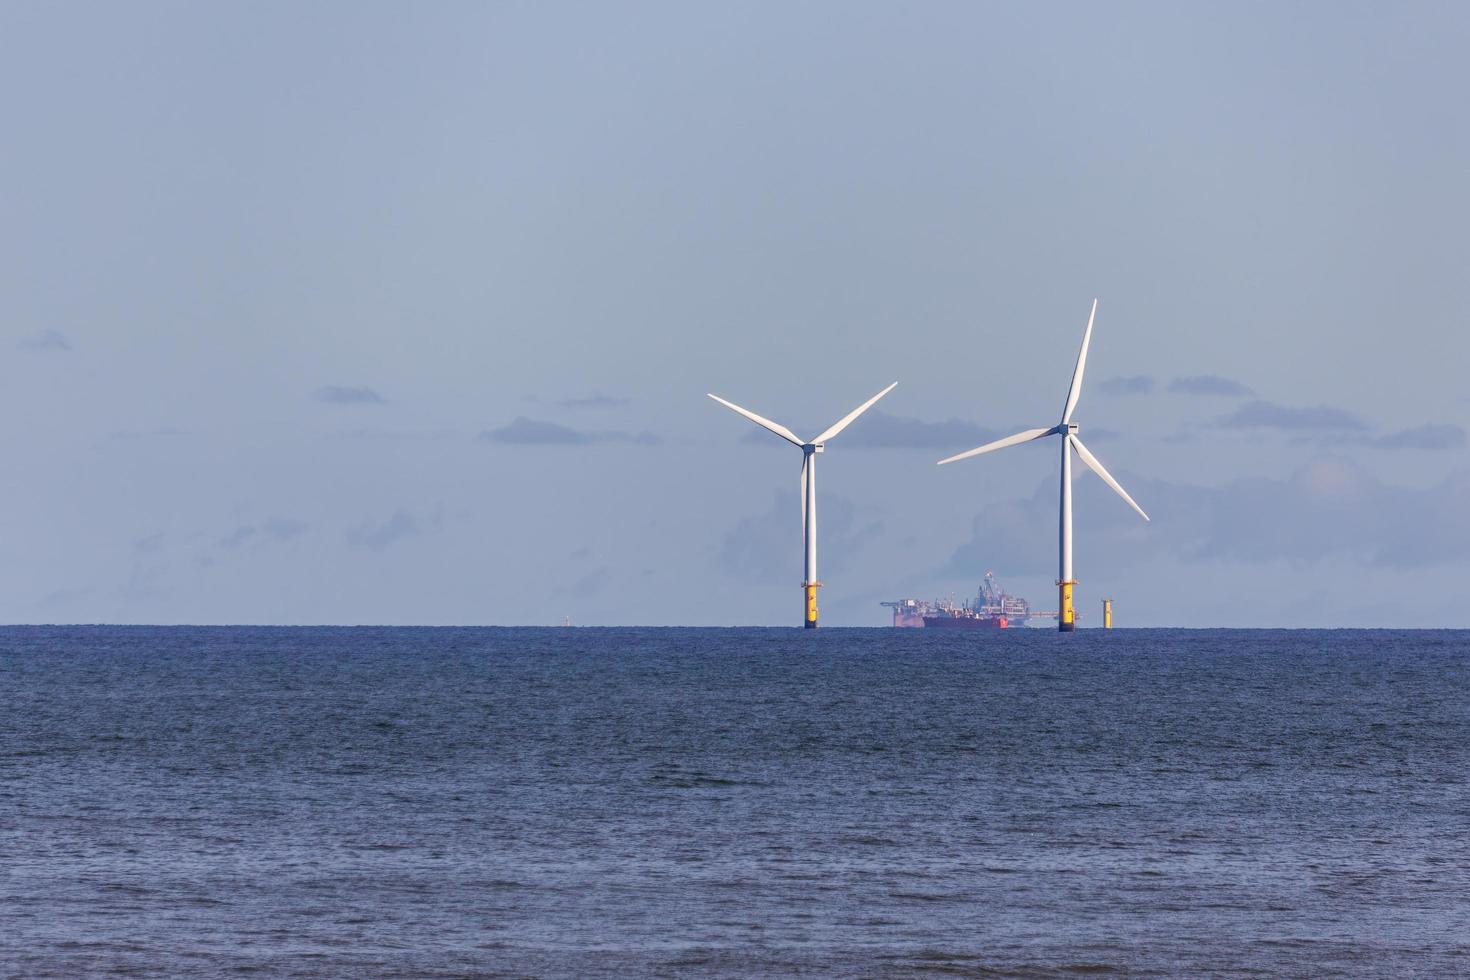 colwyn bay, galles, regno unito, 2012. turbine eoliche off shore foto